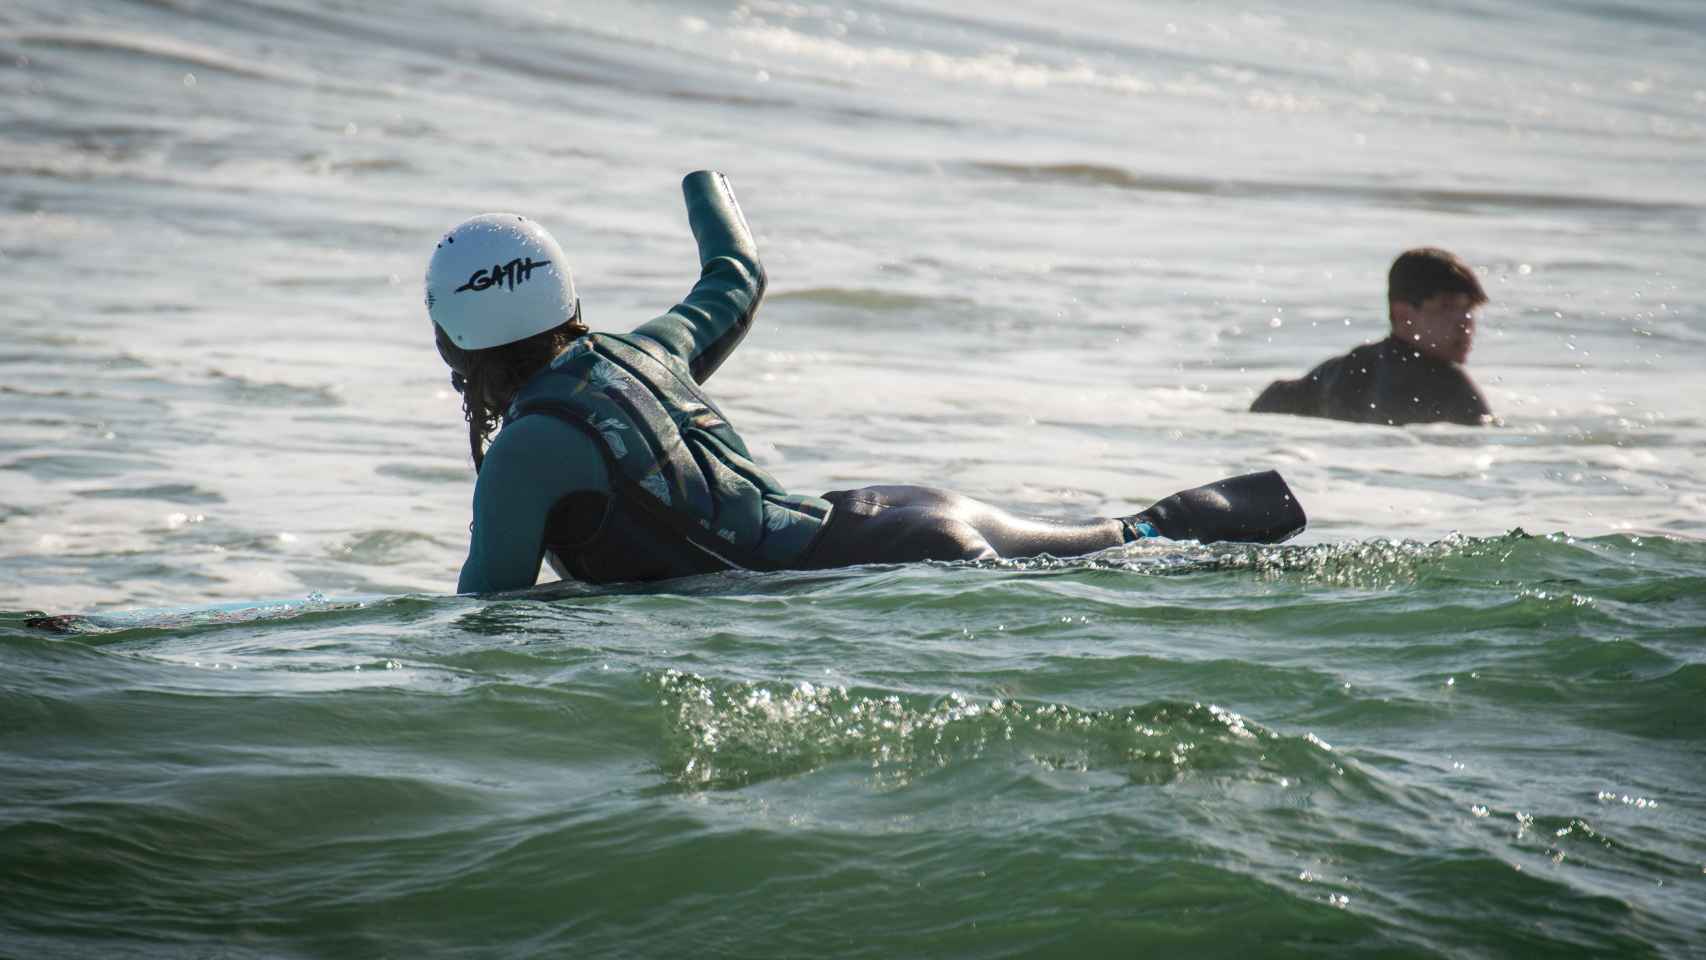 Sarah tras coger una ola durante un entrenamiento.